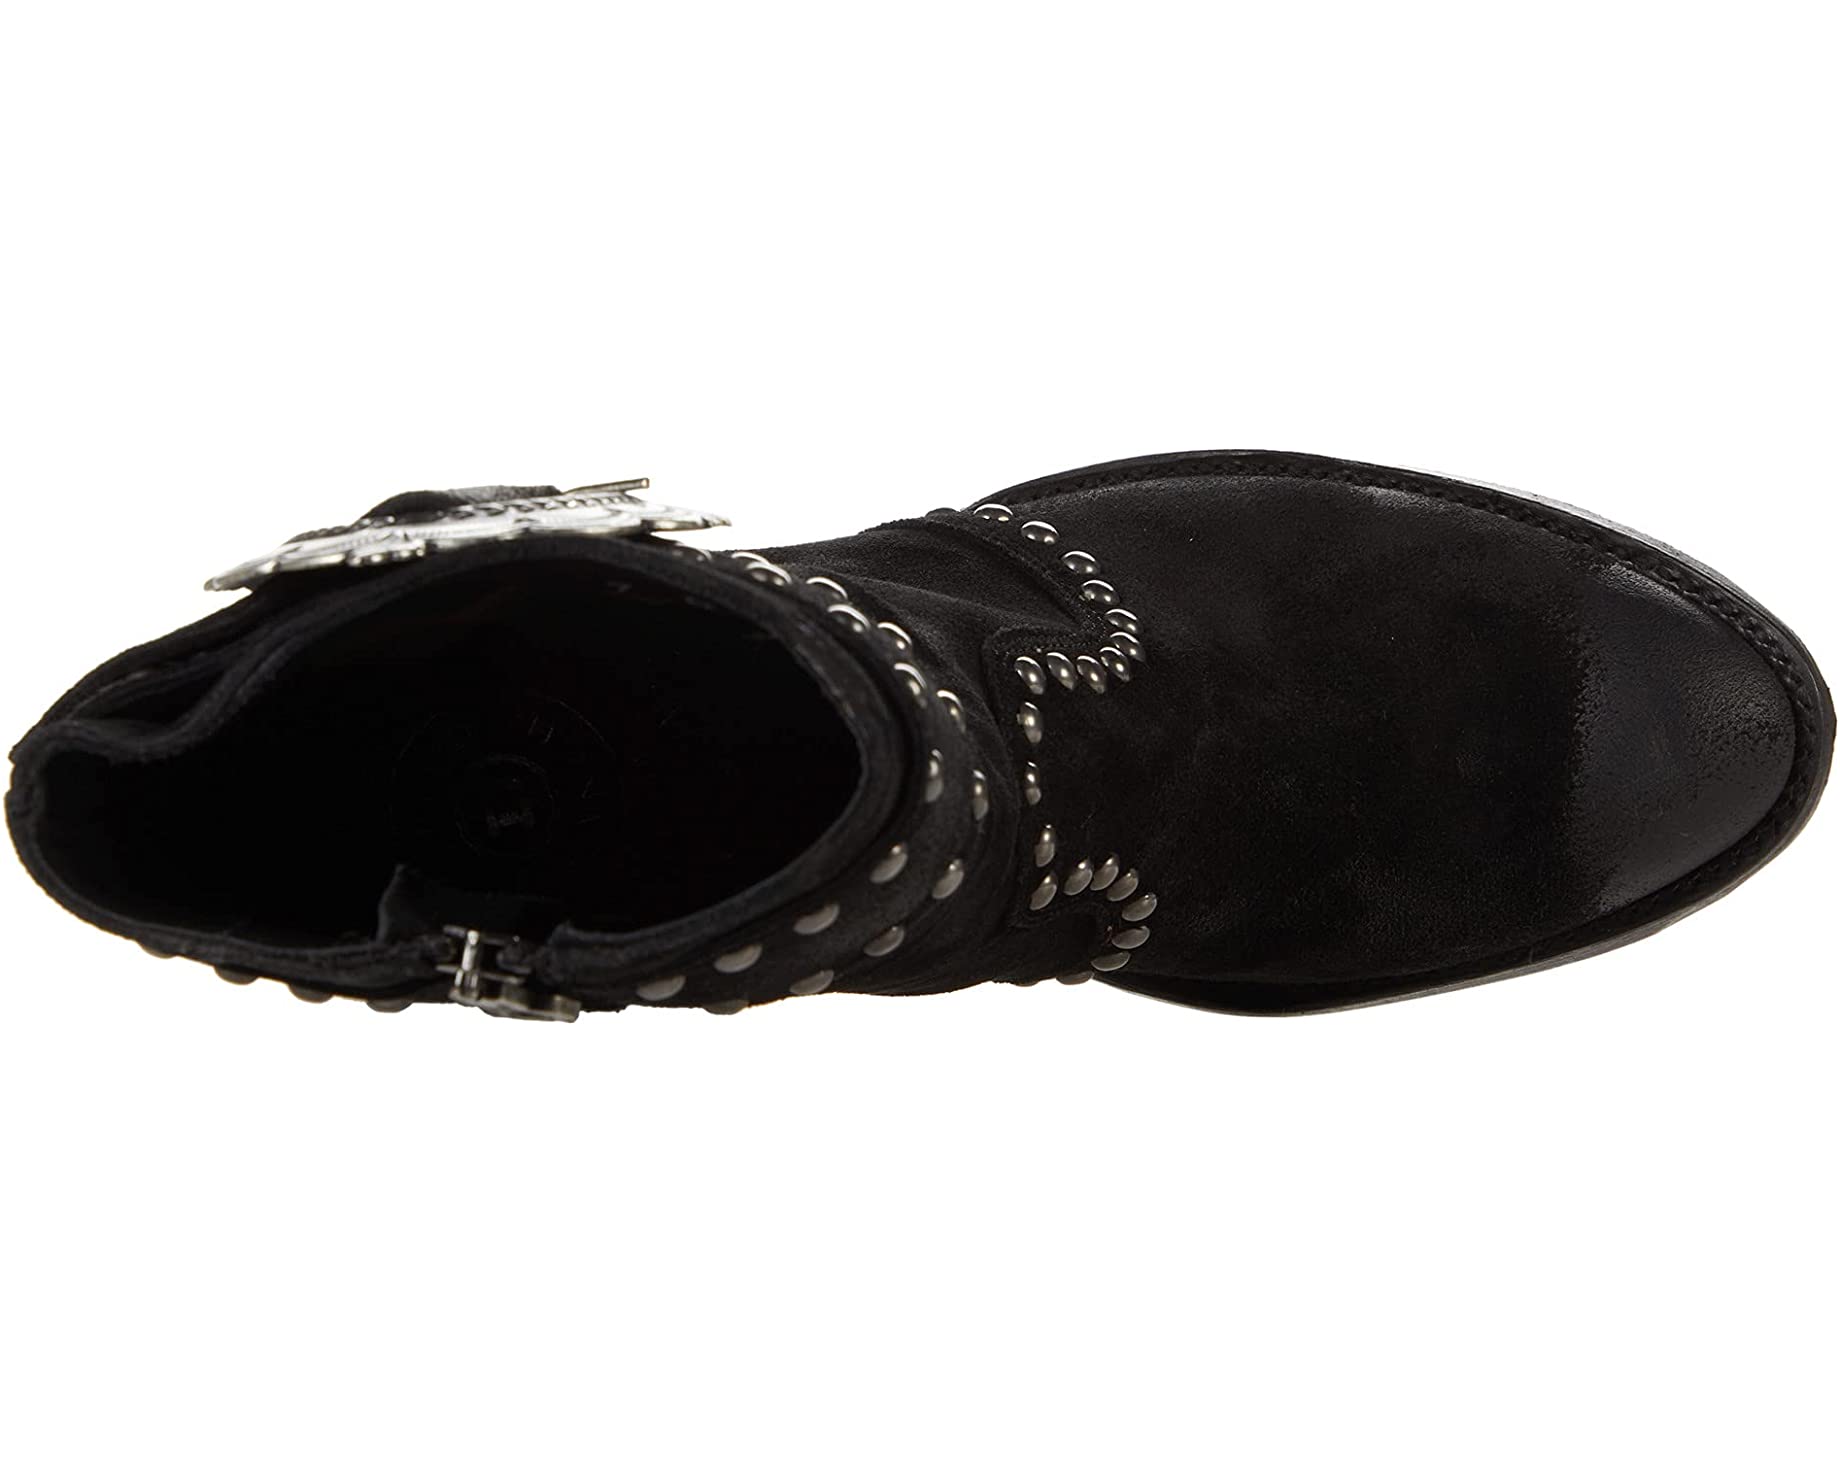 Ботинки Segovia Old Gringo, черный